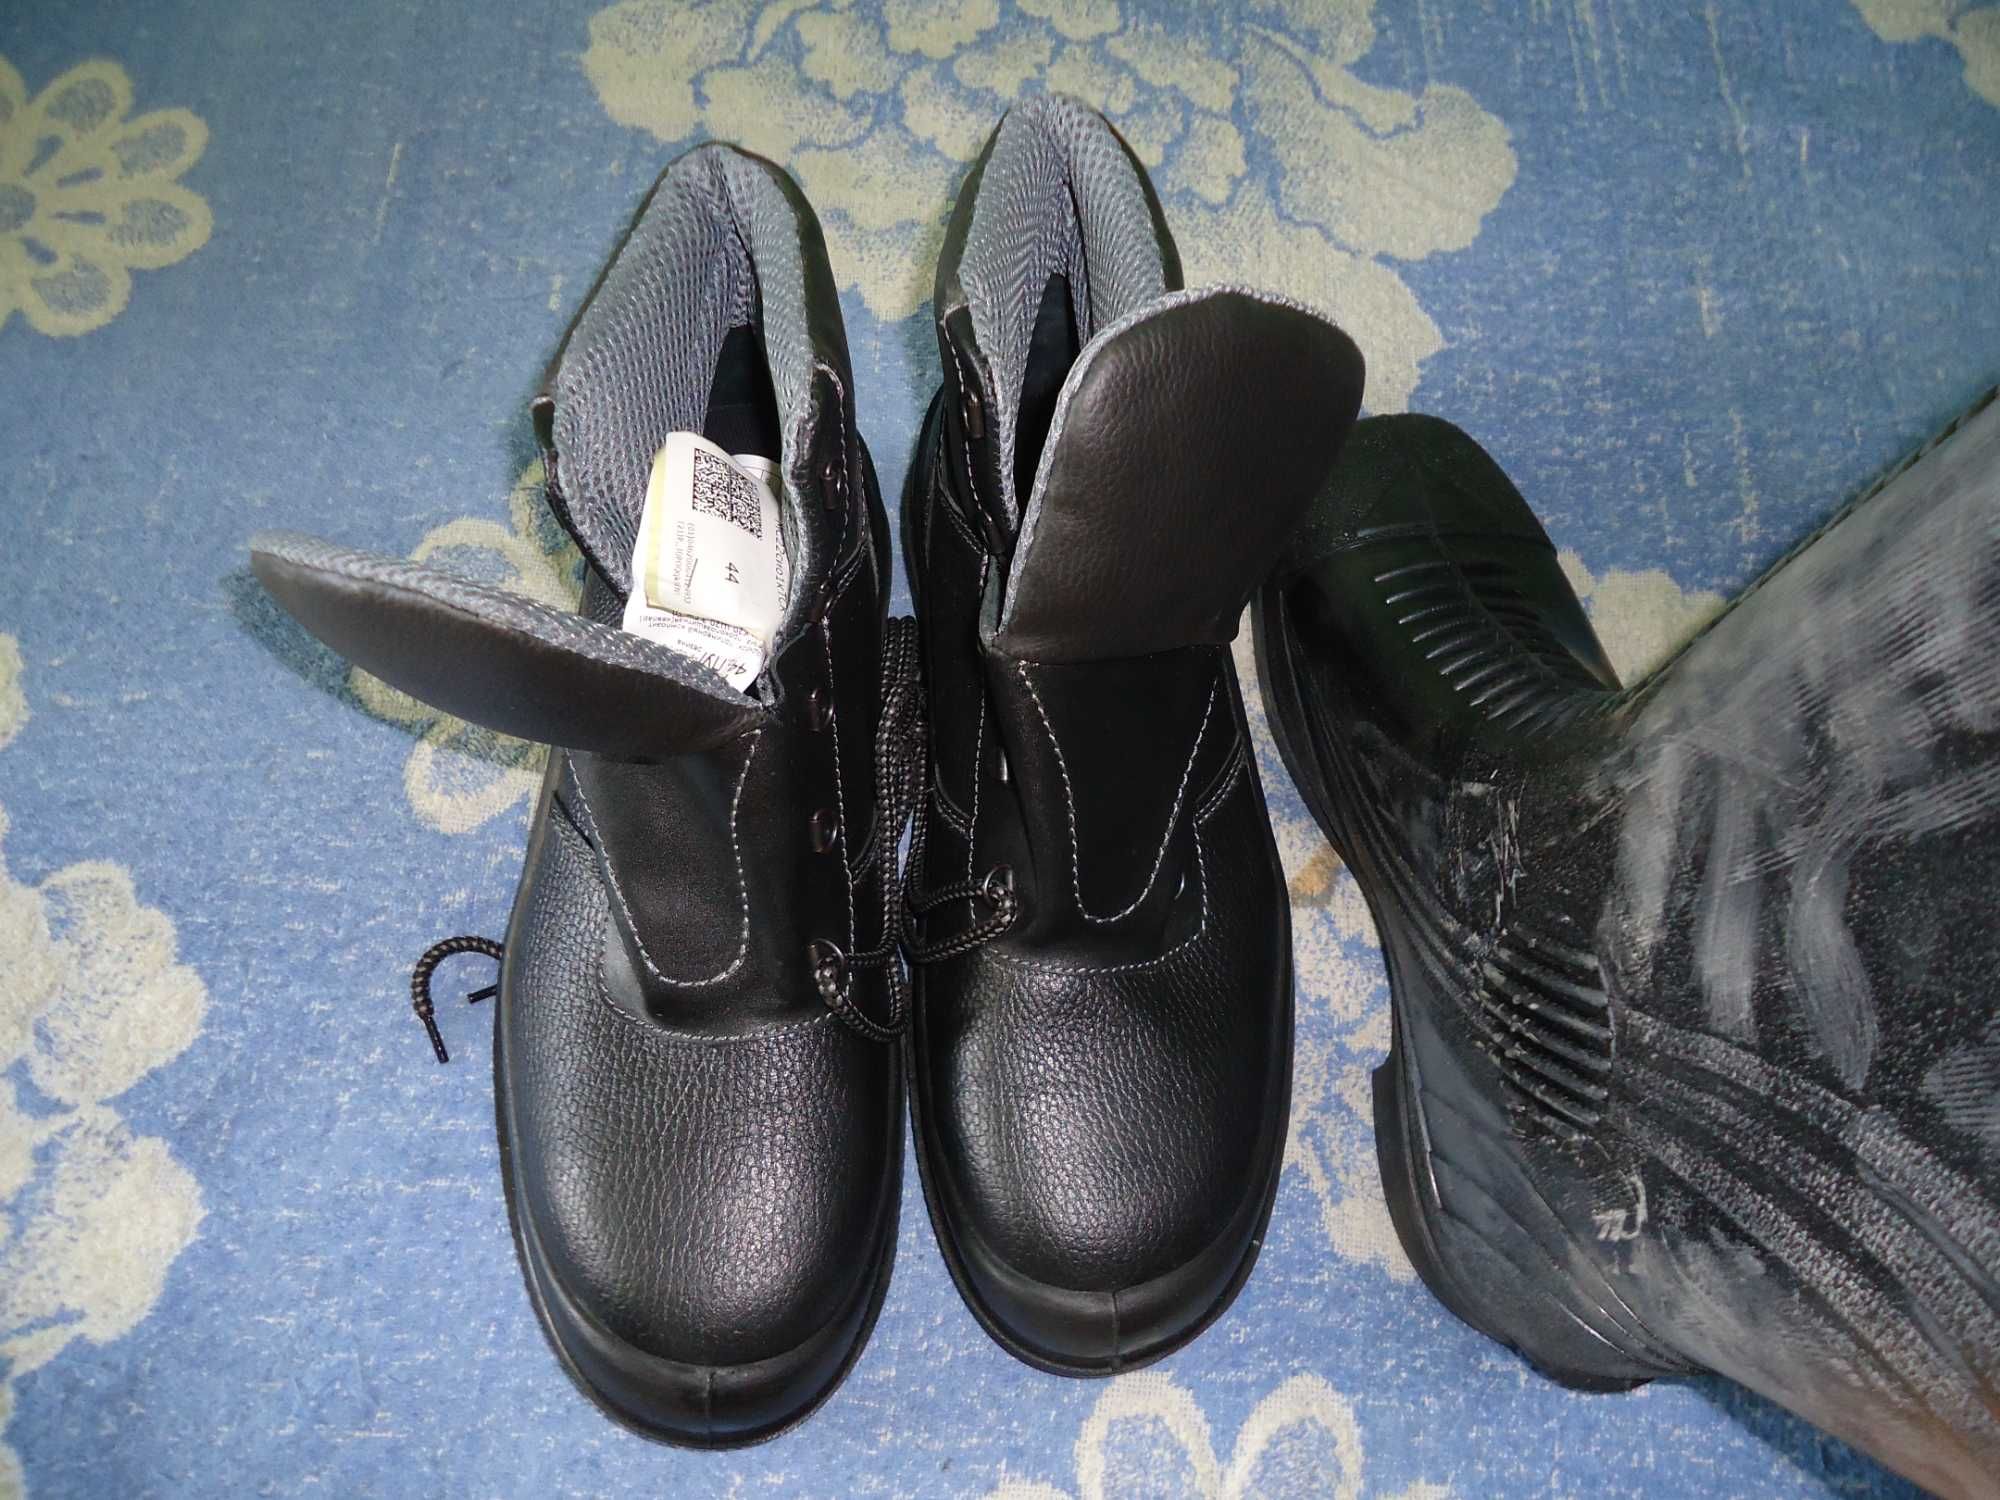 Шахтёрские рукавицы перчатки портянки ботинки сапоги есть роба ИТР.